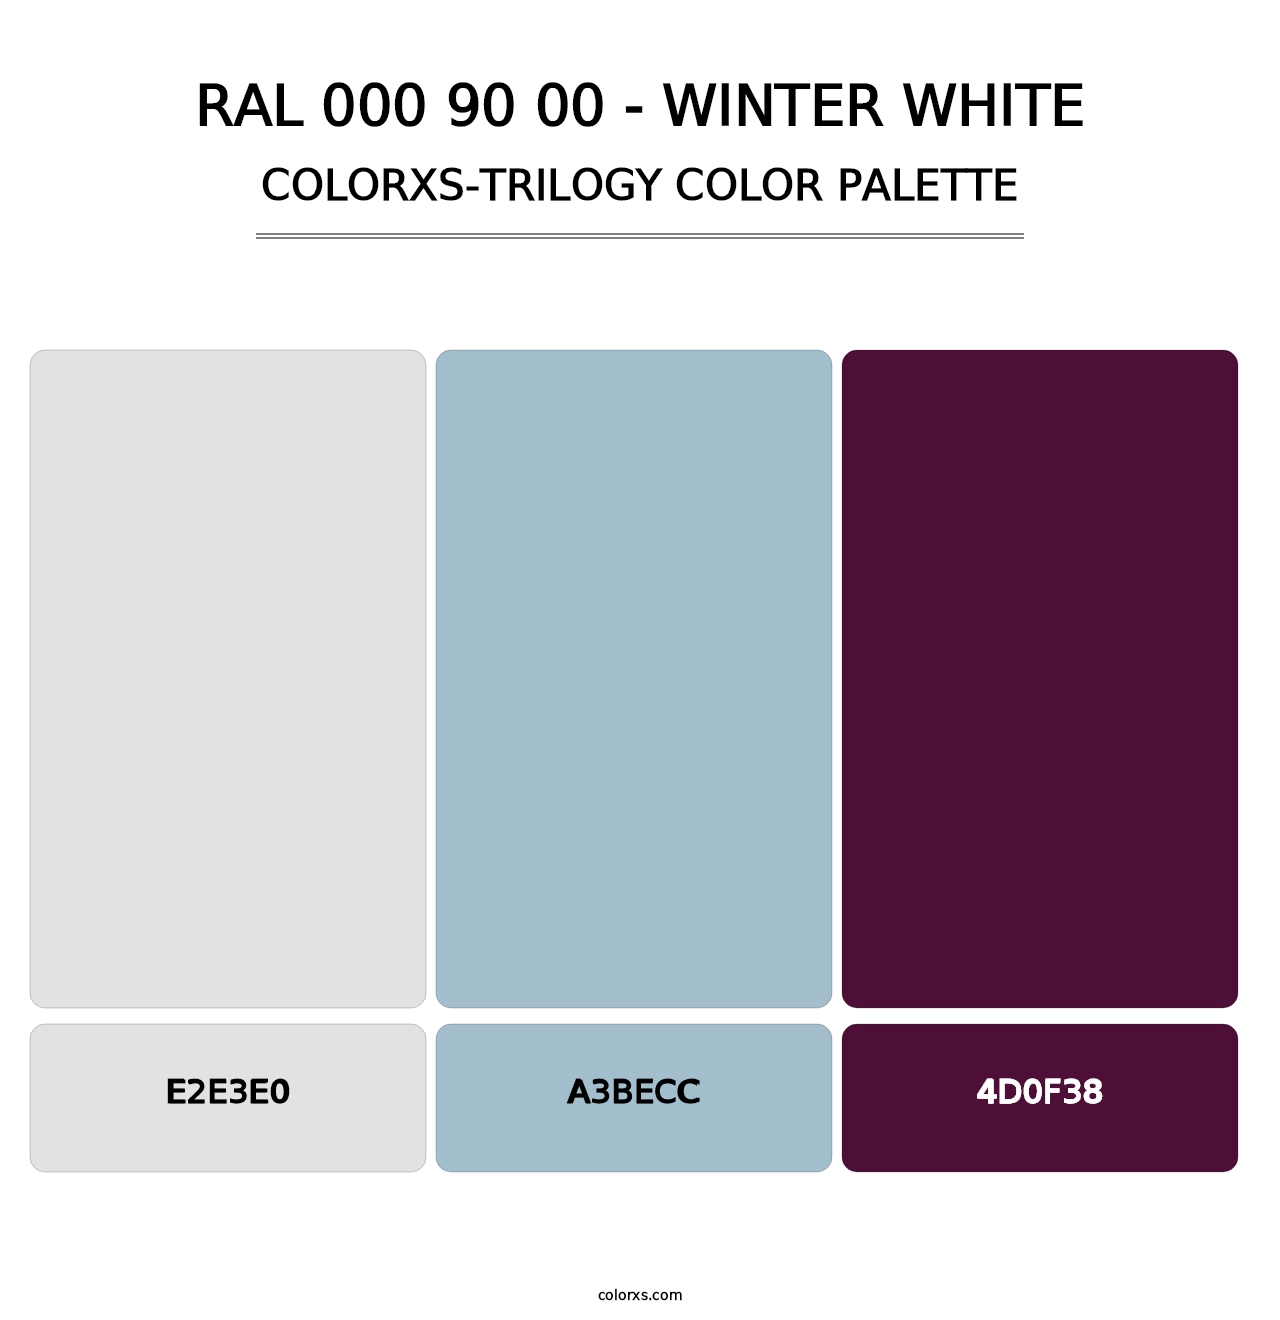 RAL 000 90 00 - Winter White - Colorxs Trilogy Palette